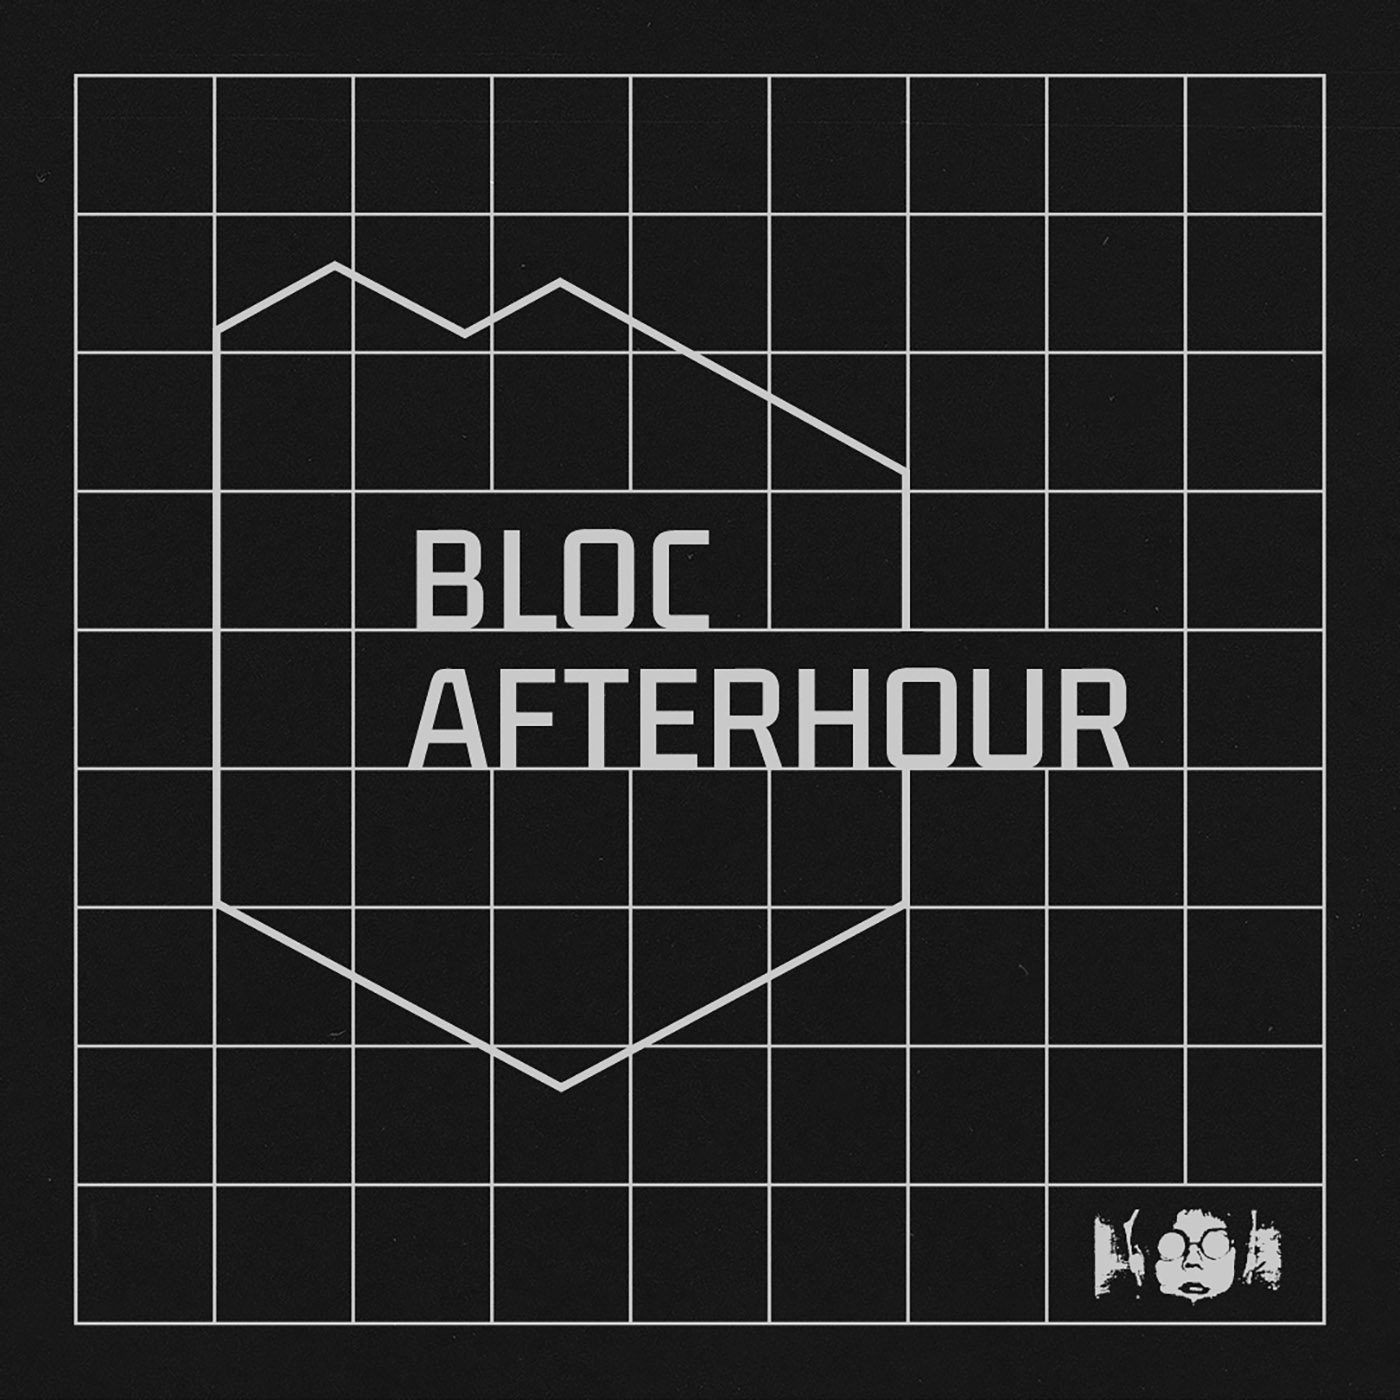 Bloc afterhour